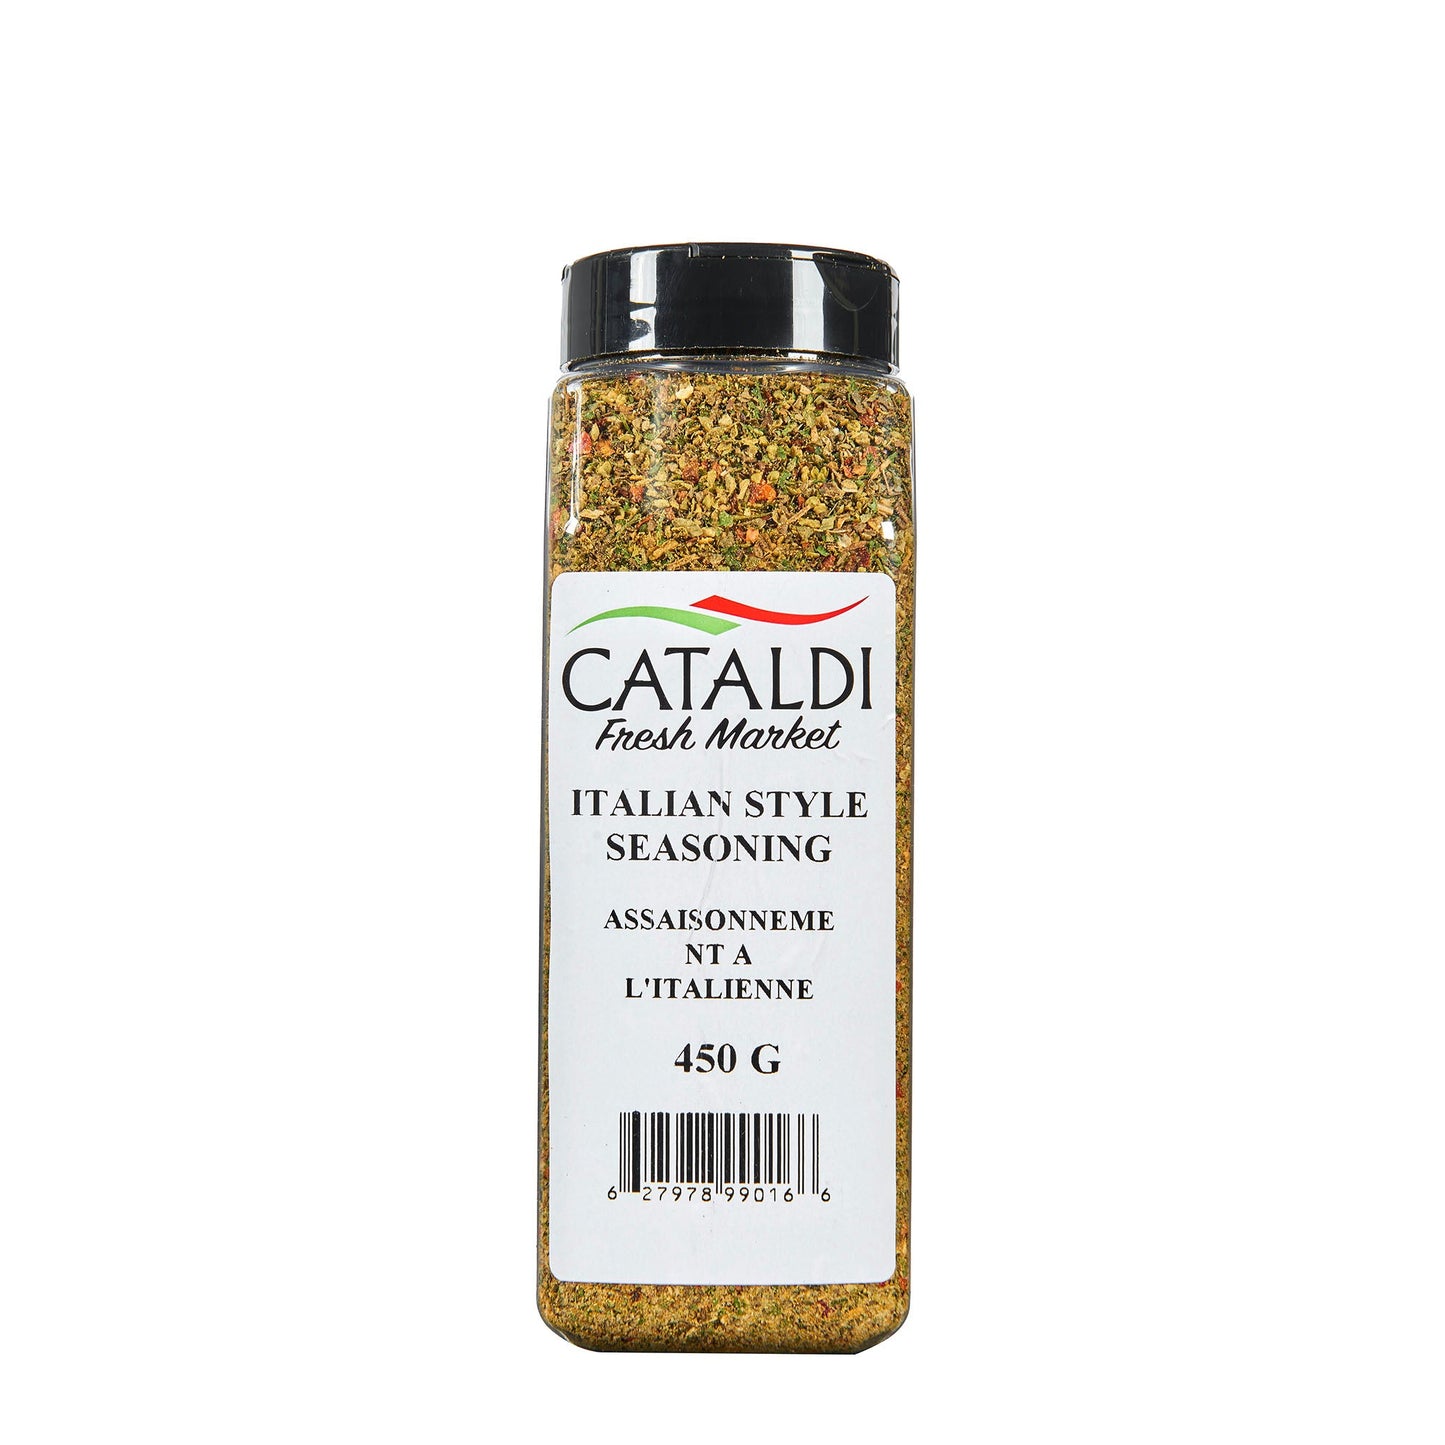 Cataldi Italian Seasoning 450g